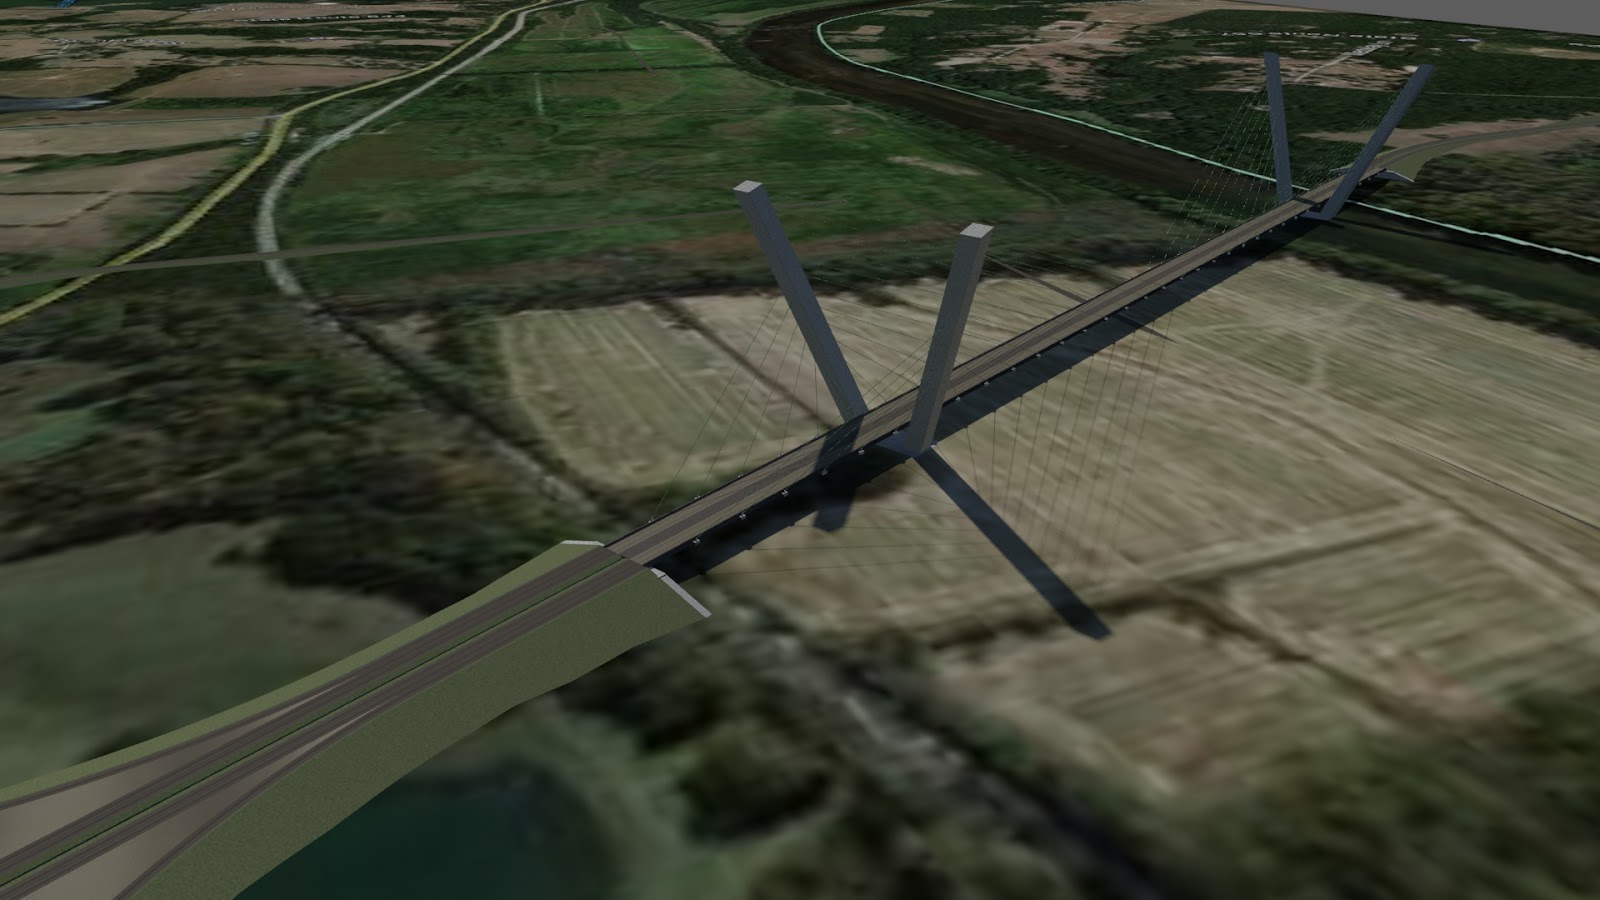 bridge modeler for autocad civil 3d 2015